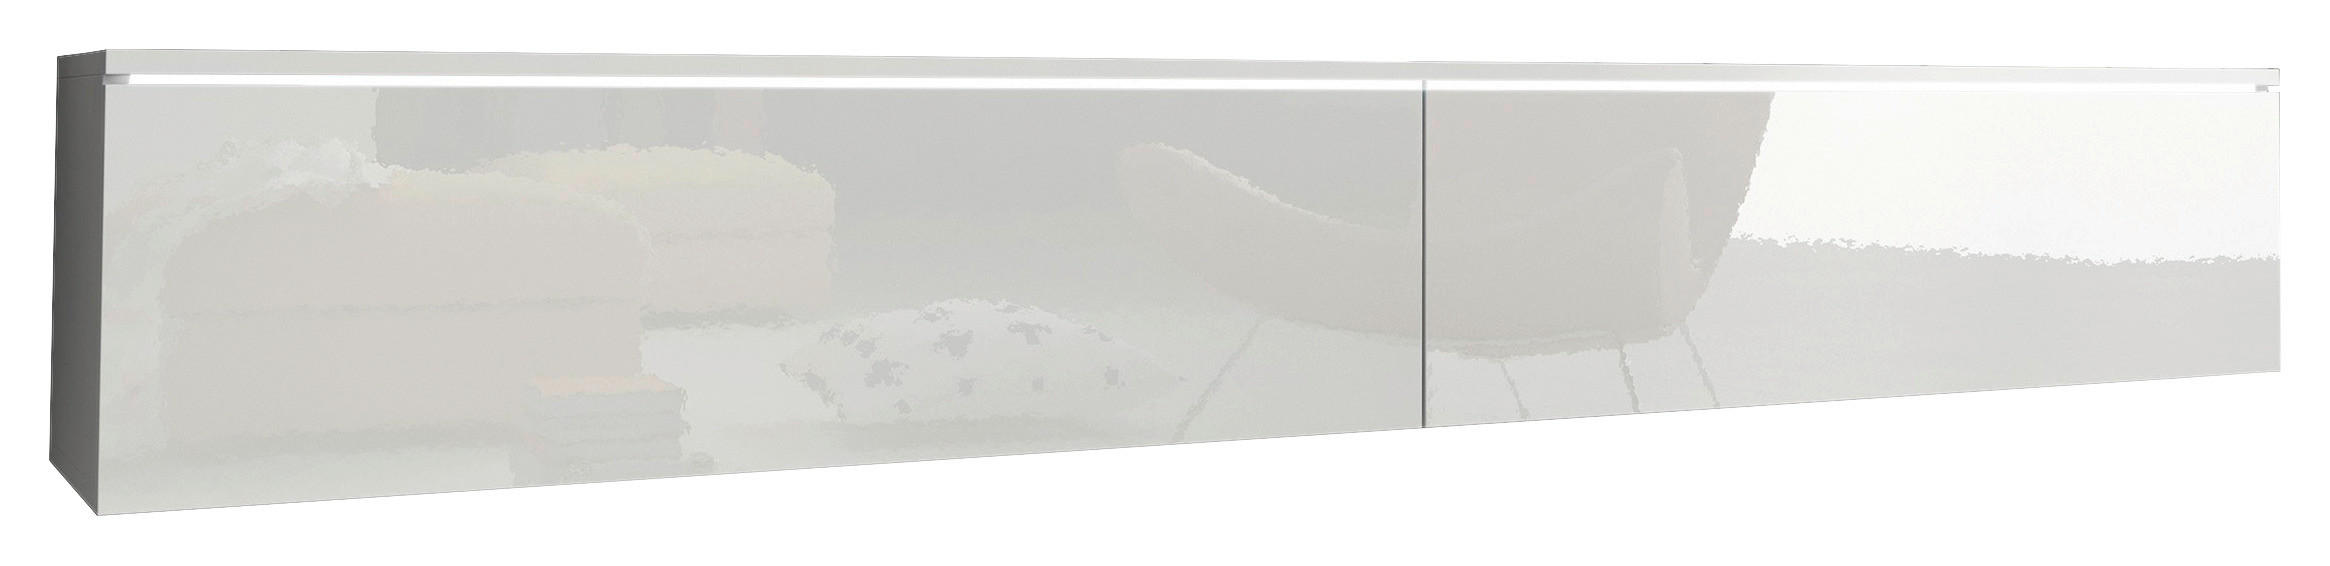 LOWBOARD Weiß, Weiß Hochglanz  - Weiß Hochglanz/Weiß, LIFESTYLE, Kunststoff (180/30/33cm) - P & B